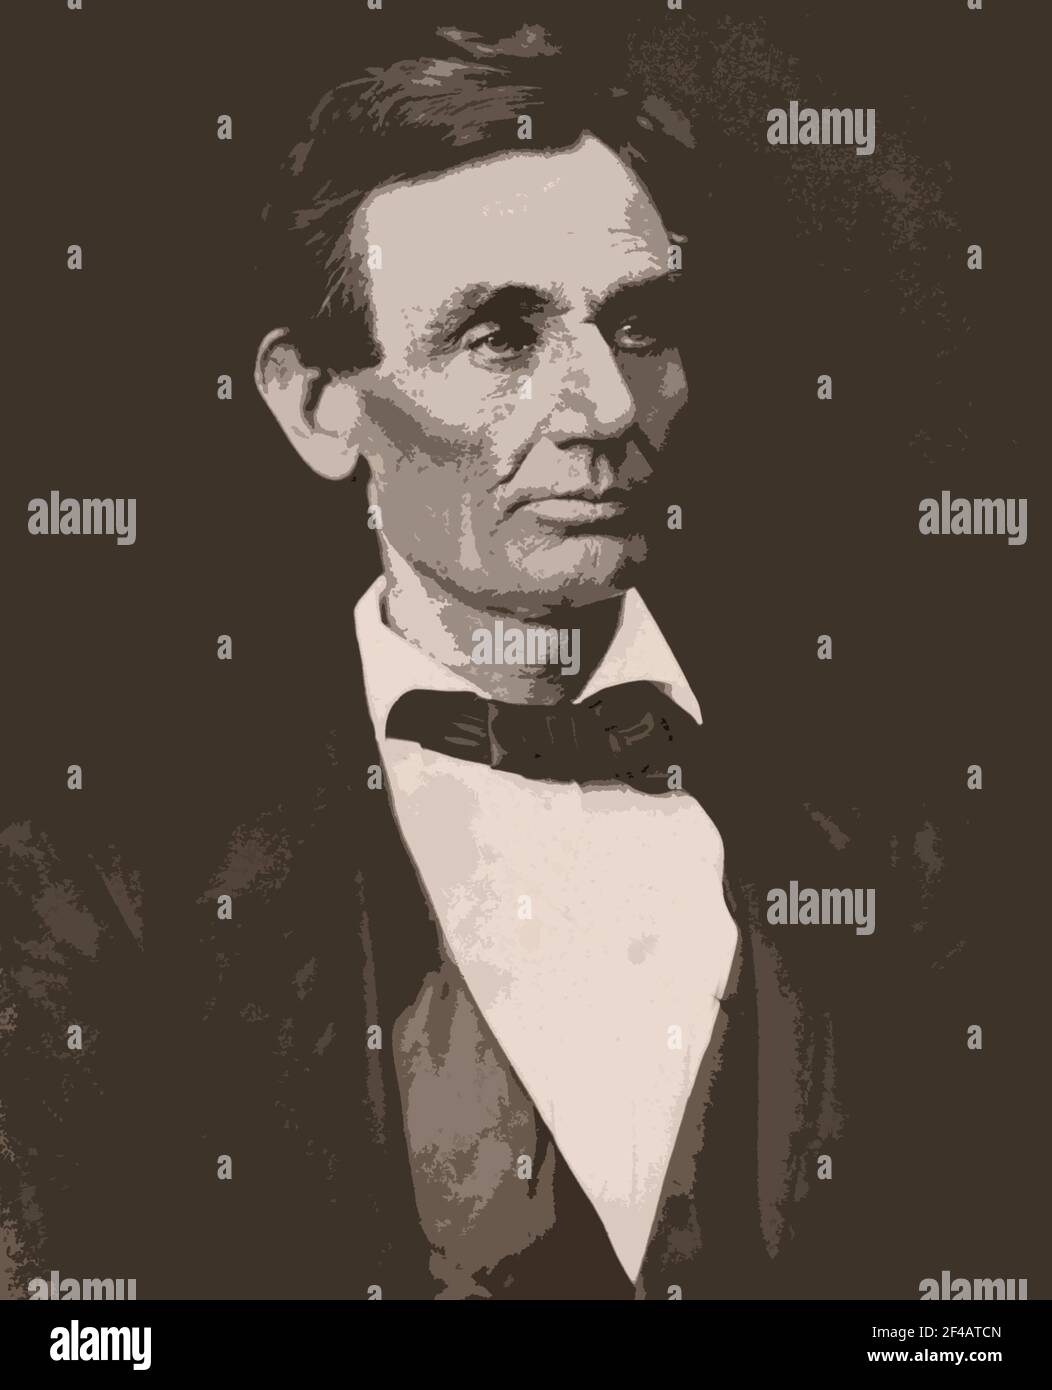 Una fotografia del 1832 dell'ex presidente degli Stati Uniti Abraham Lincoln alterata con un filtro Photoshop effetti speciali. Foto Stock